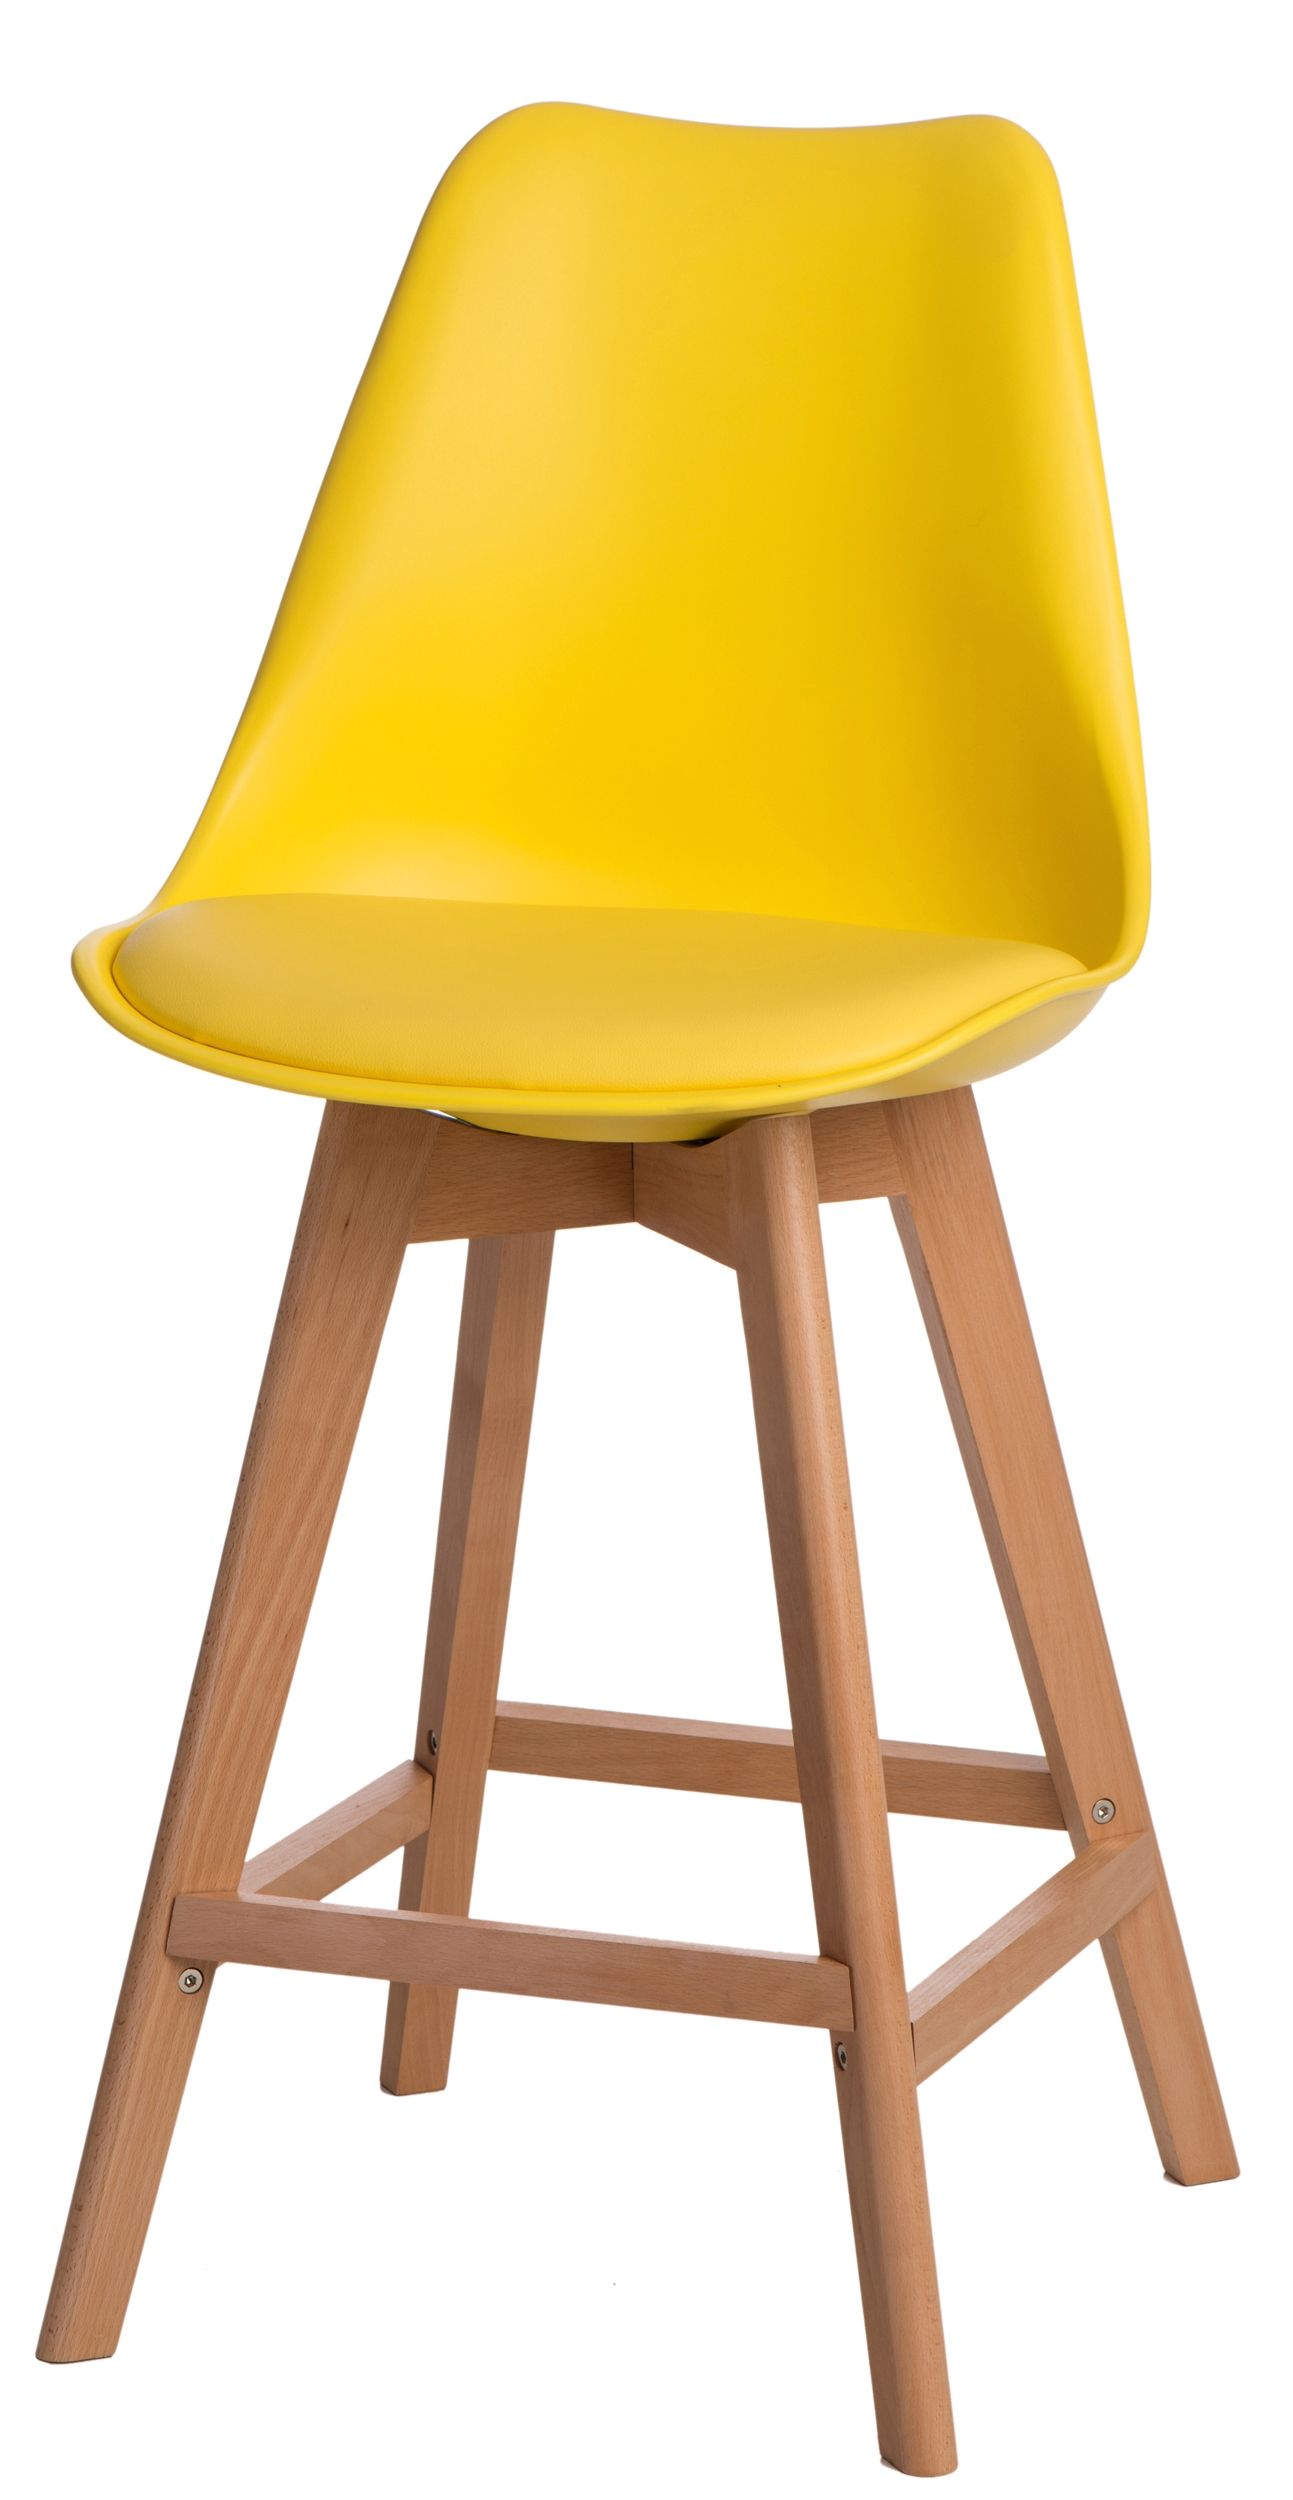  Barová židle Norden Wood Low PP žlutý - Mobler.cz